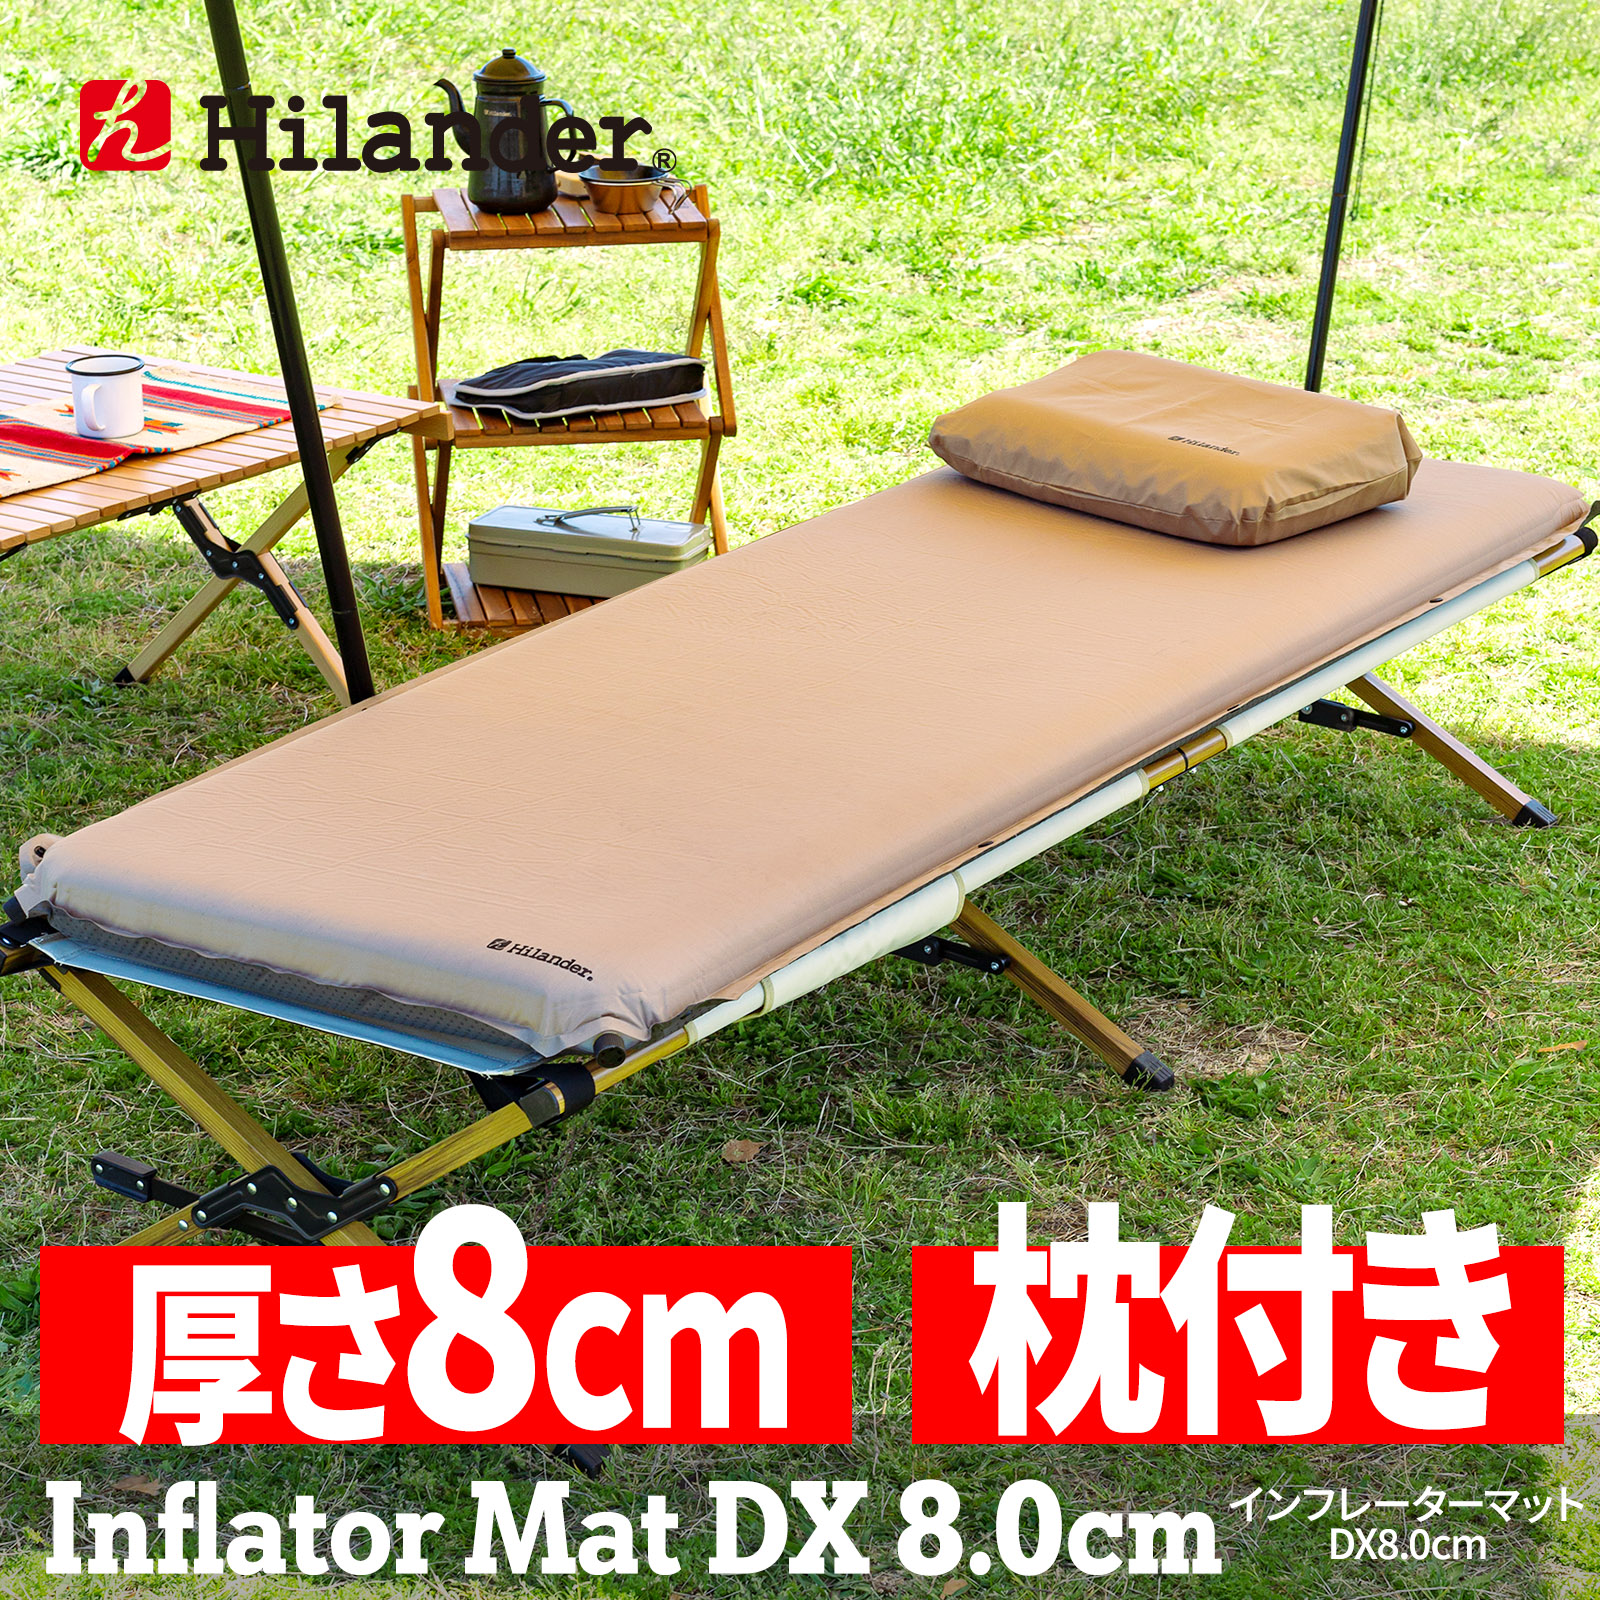 アウトドアマット ハイランダー 8.0cm 枕付きインフレーターマットDX キャンプマット 8cm 自動膨張式 シングルの商品画像